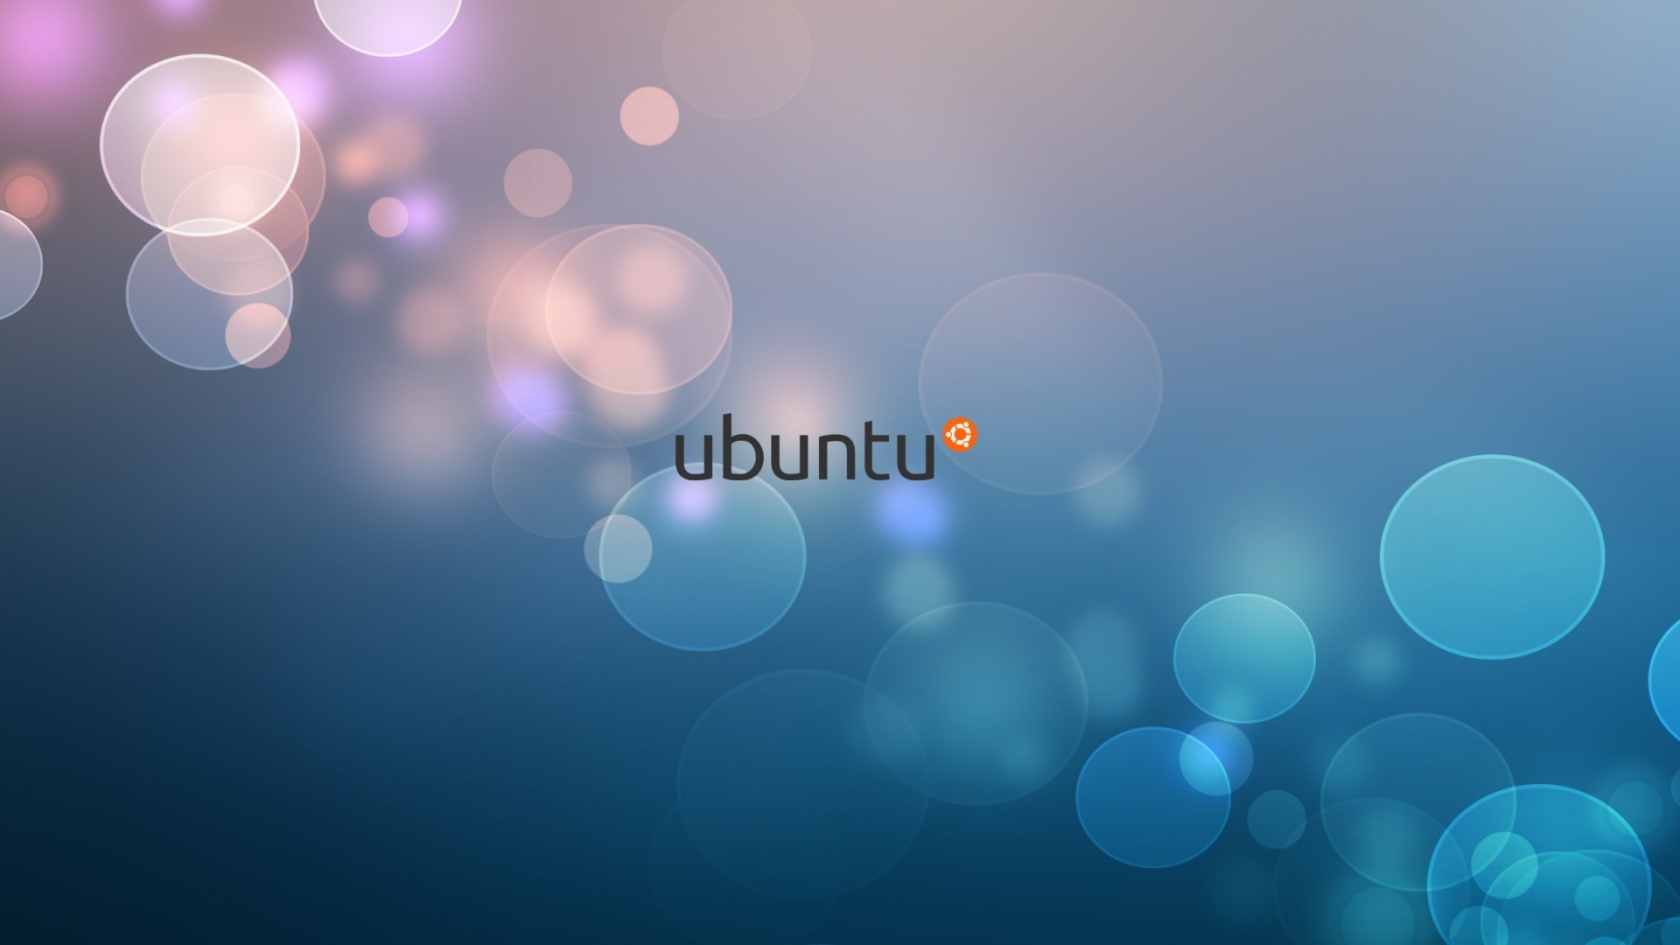 Ubuntu Minimalistic for 1680 x 945 HDTV resolution